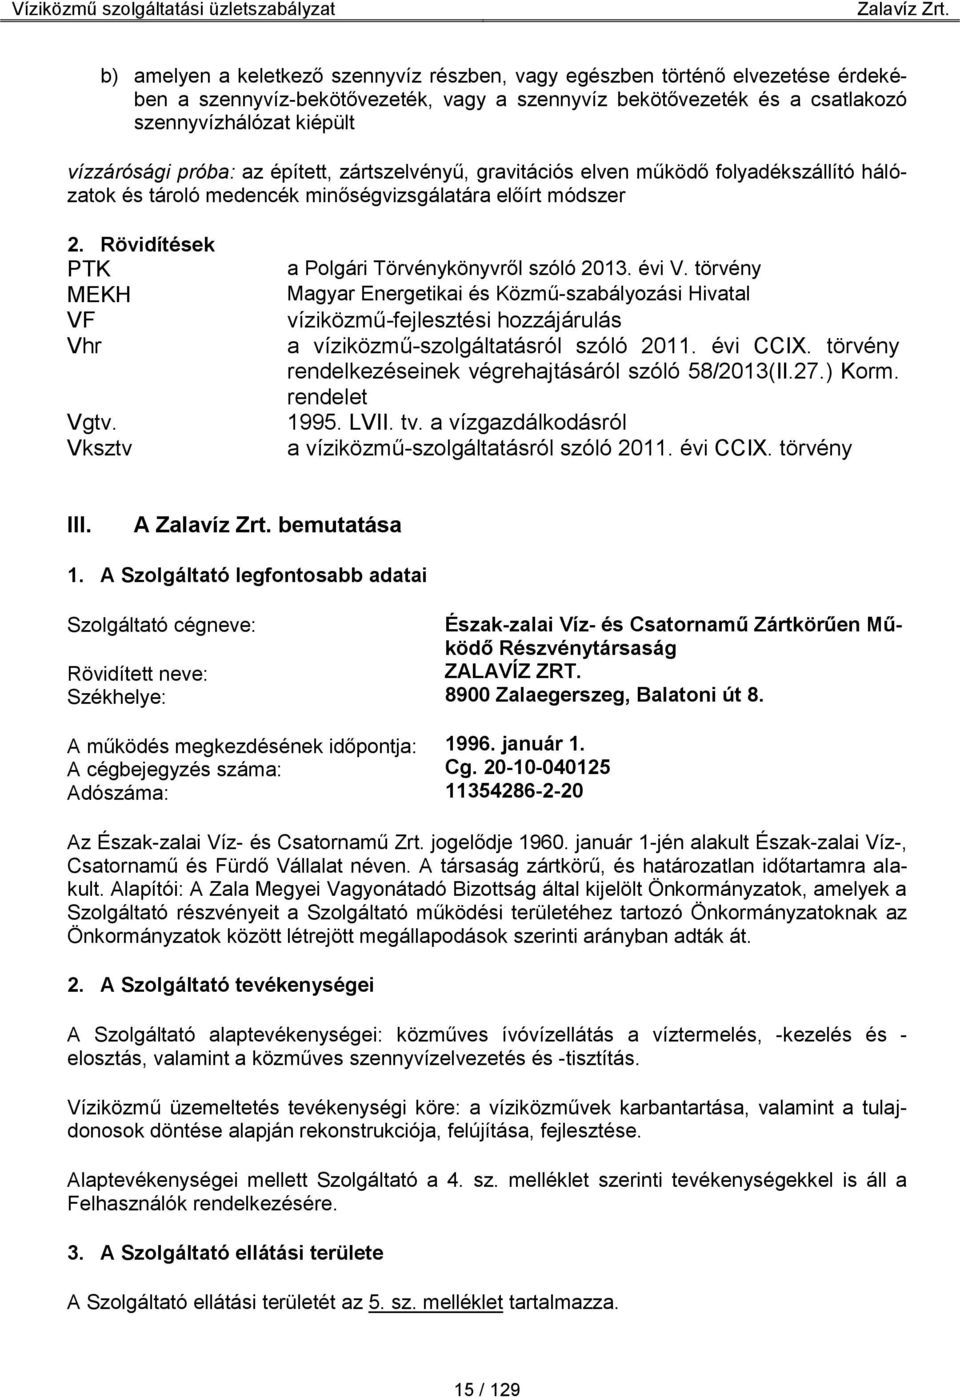 Vksztv a Polgári Törvénykönyvről szóló 2013. évi V. törvény Magyar Energetikai és Közmű-szabályozási Hivatal víziközmű-fejlesztési hozzájárulás a víziközmű-szolgáltatásról szóló 2011. évi CCIX.